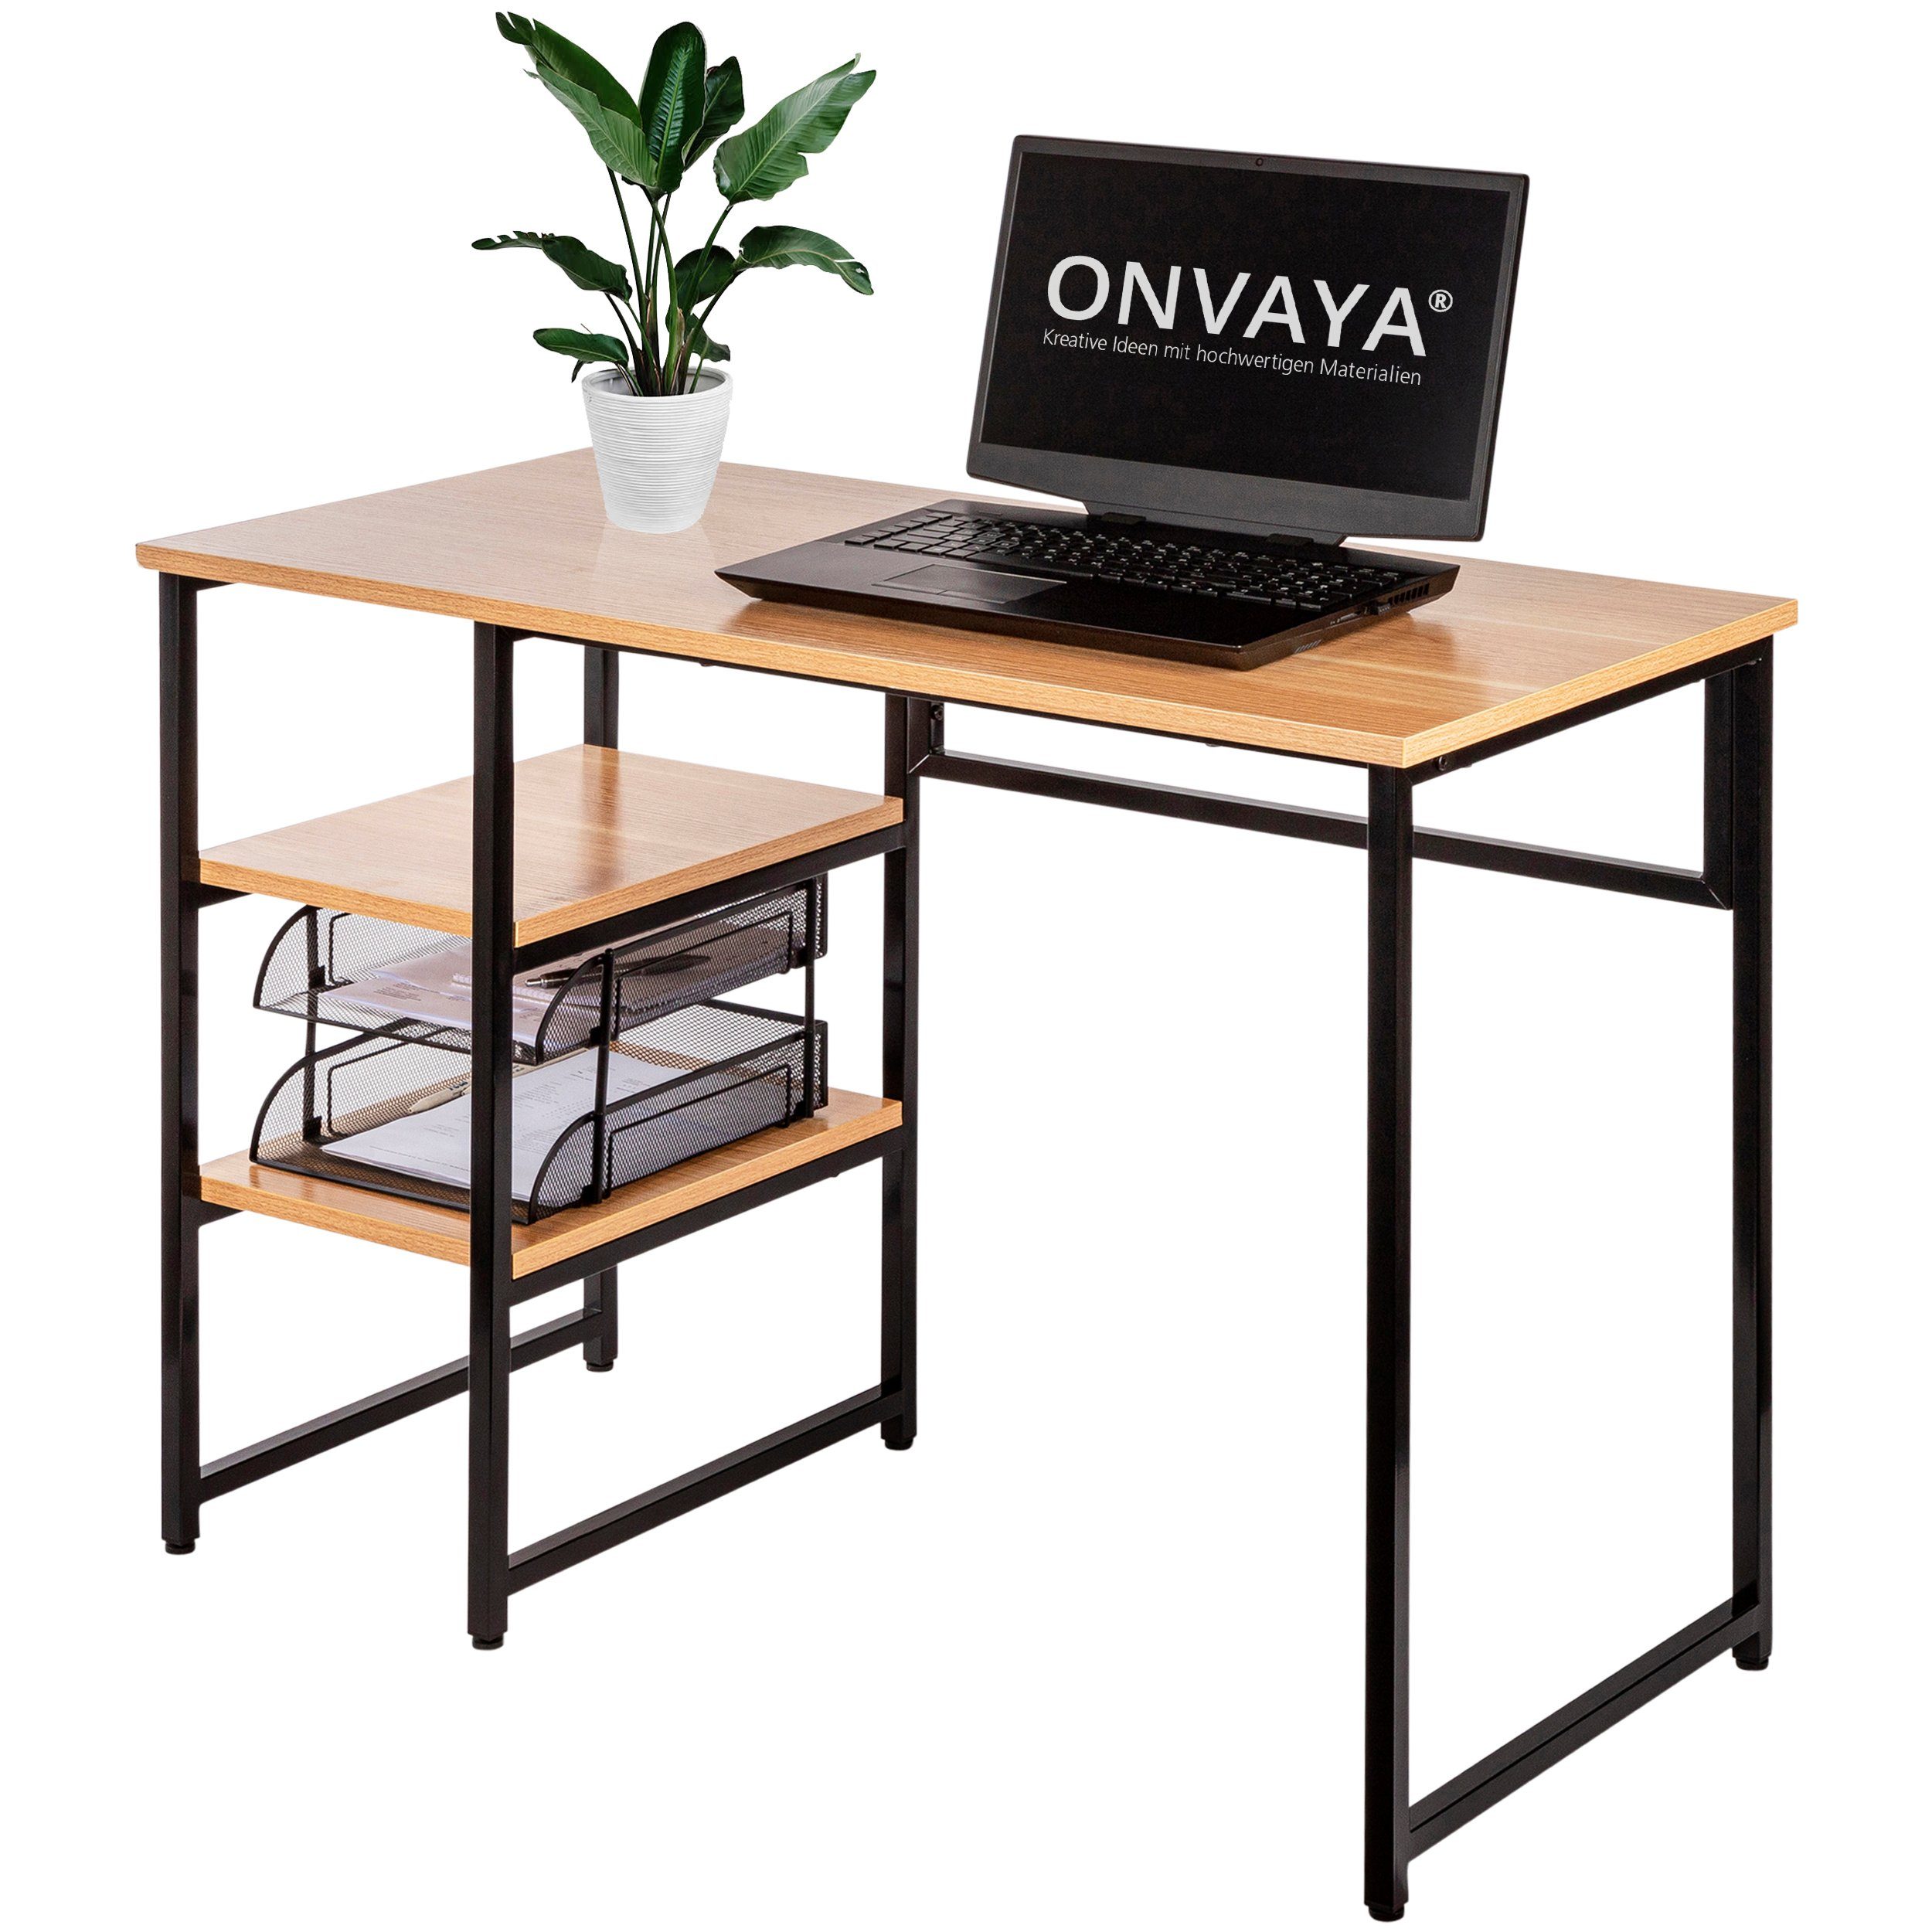 ONVAYA Schreibtisch »Schreibtisch, Computertisch mit Stauraum, Bürotisch,  Home Office-Tisch, Laptop & PC-Tisch, Tischplatte & Ablageflächen aus Holz,  Gestell aus Metall« online kaufen | OTTO